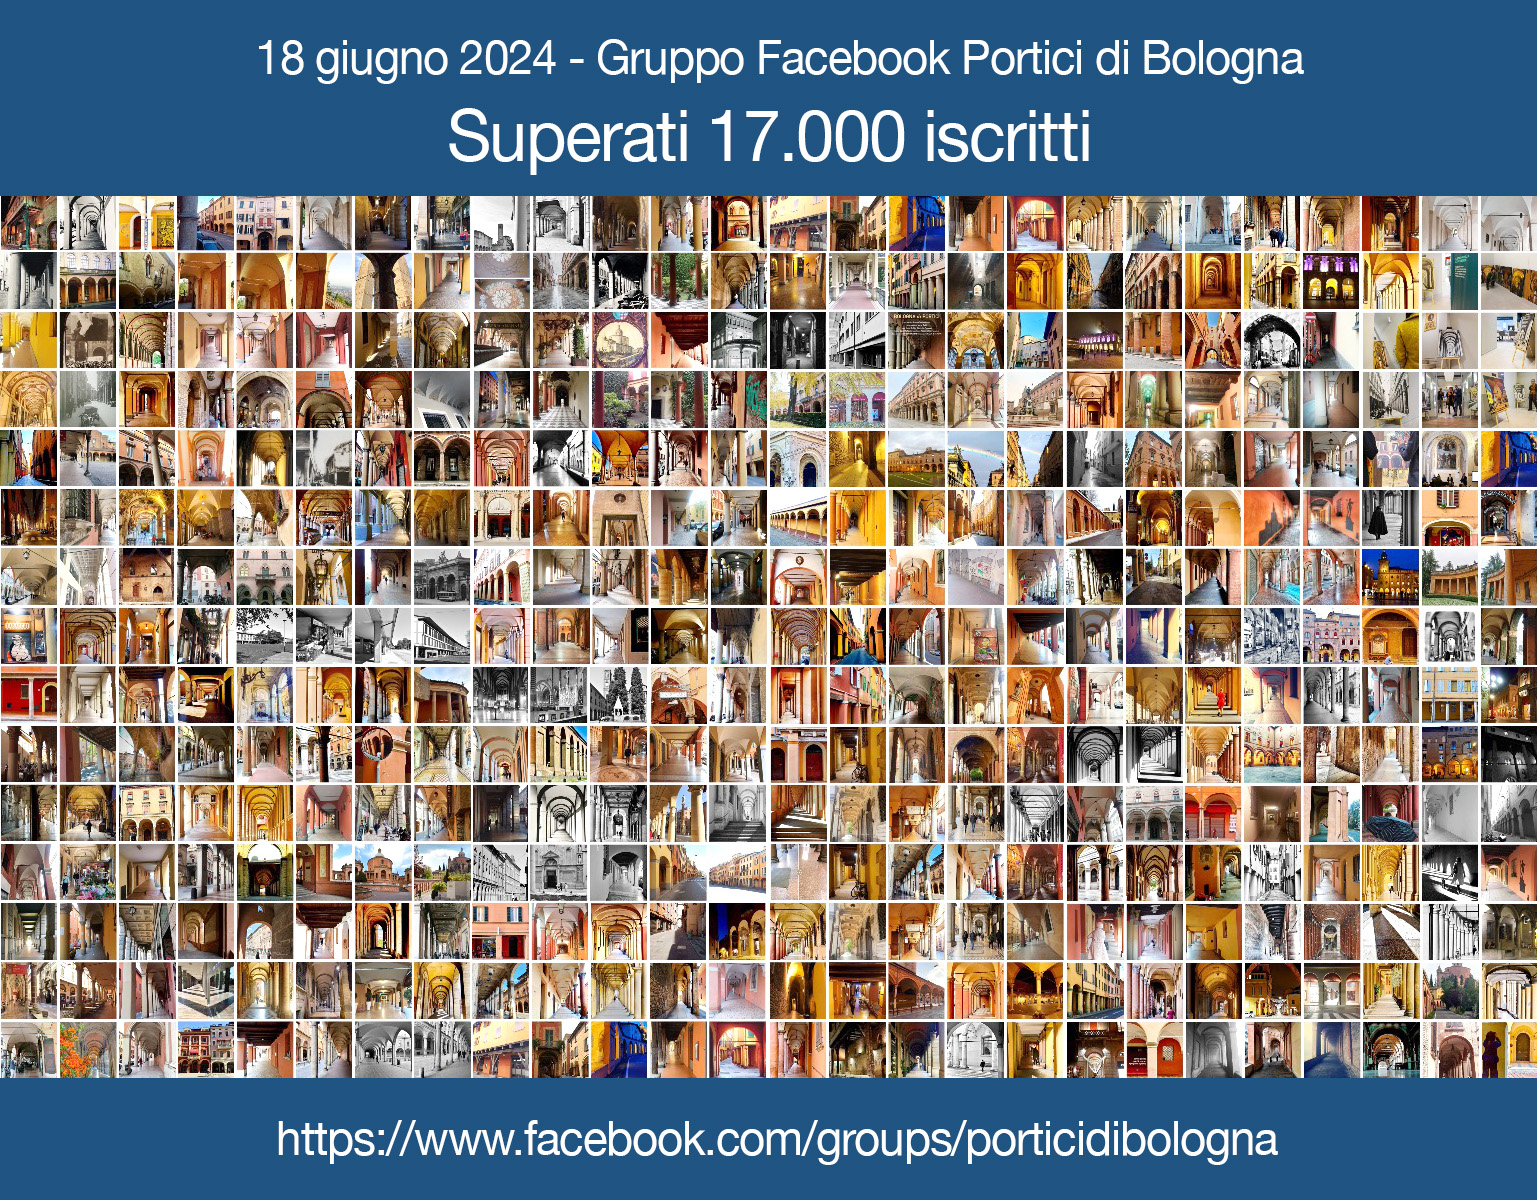 Superati 17.000 iscritti al Gruppo Facebook Portici di Bologna